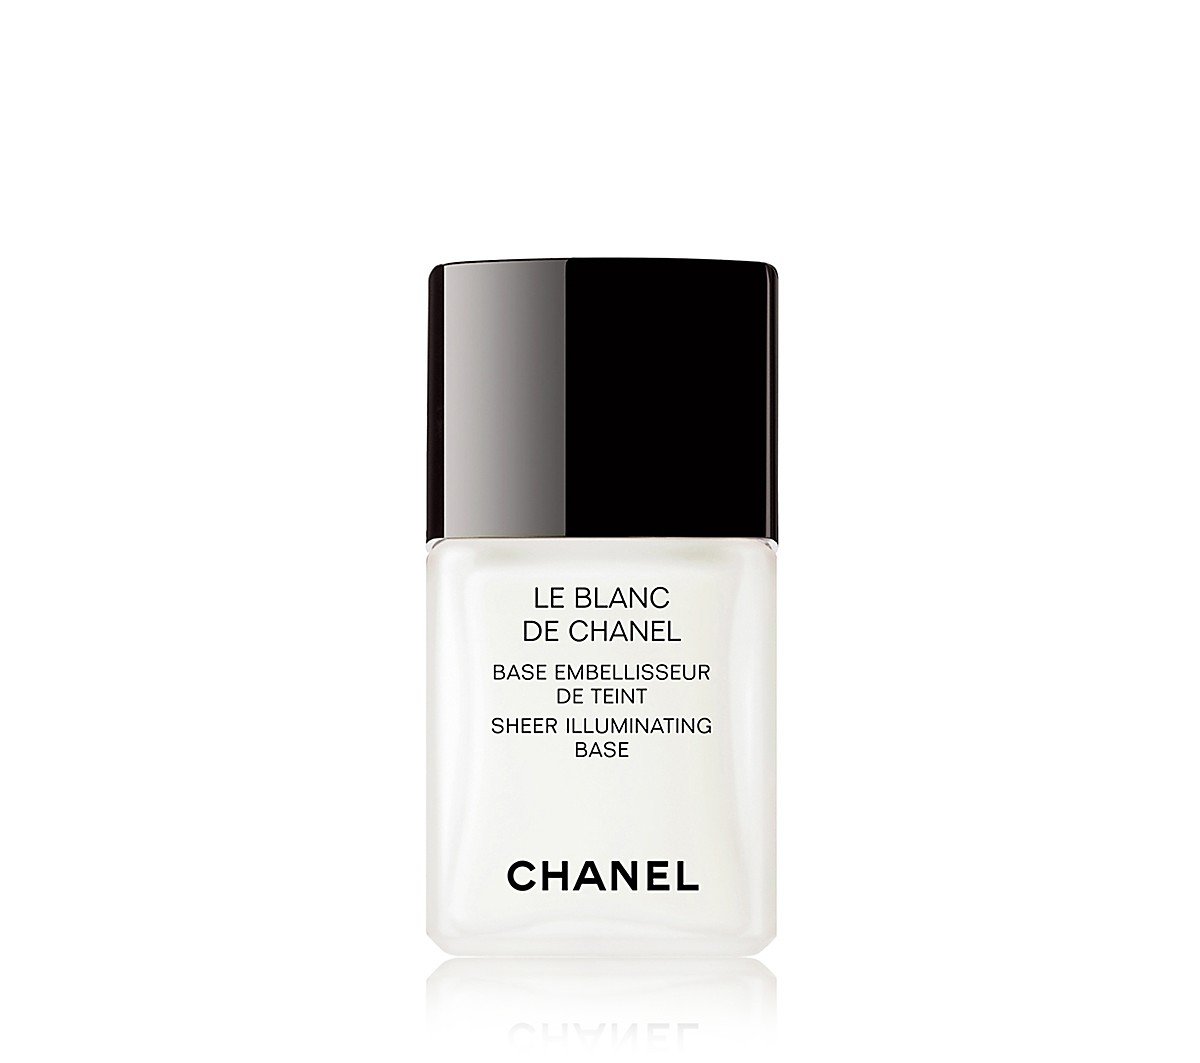 Le Blanc de Chanel